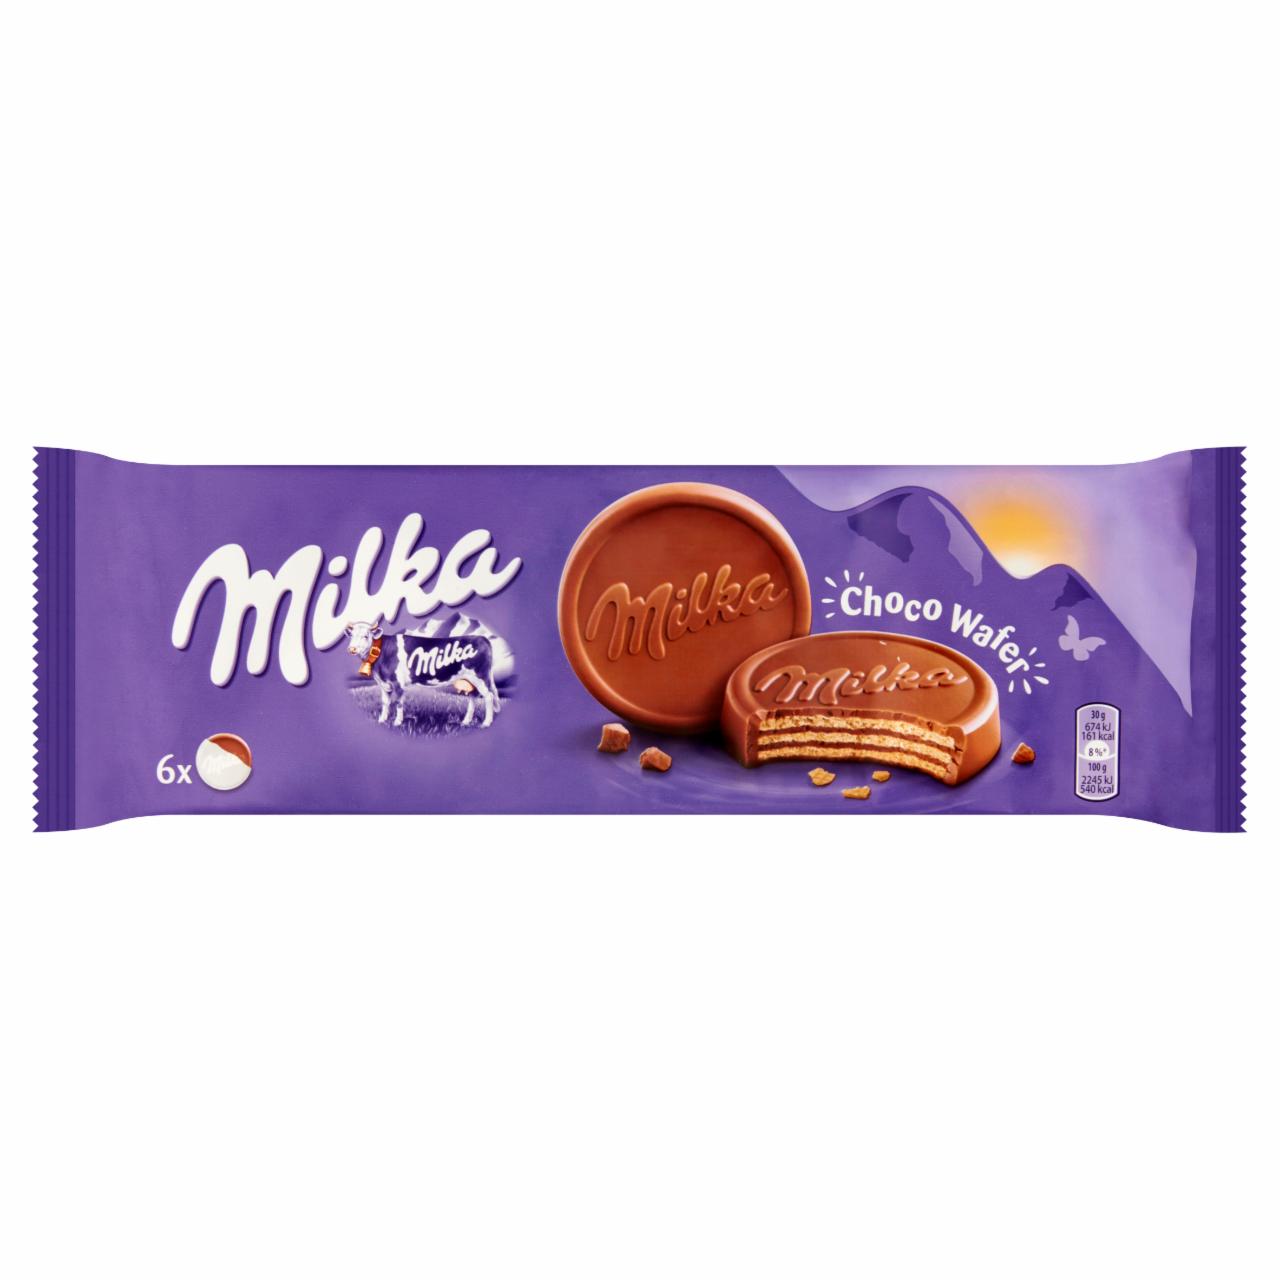 Képek - Milka Choco Wafer kakaós töltelékkel töltött, alpesi tejcsokoládéval bevont ostya 6 db 180 g